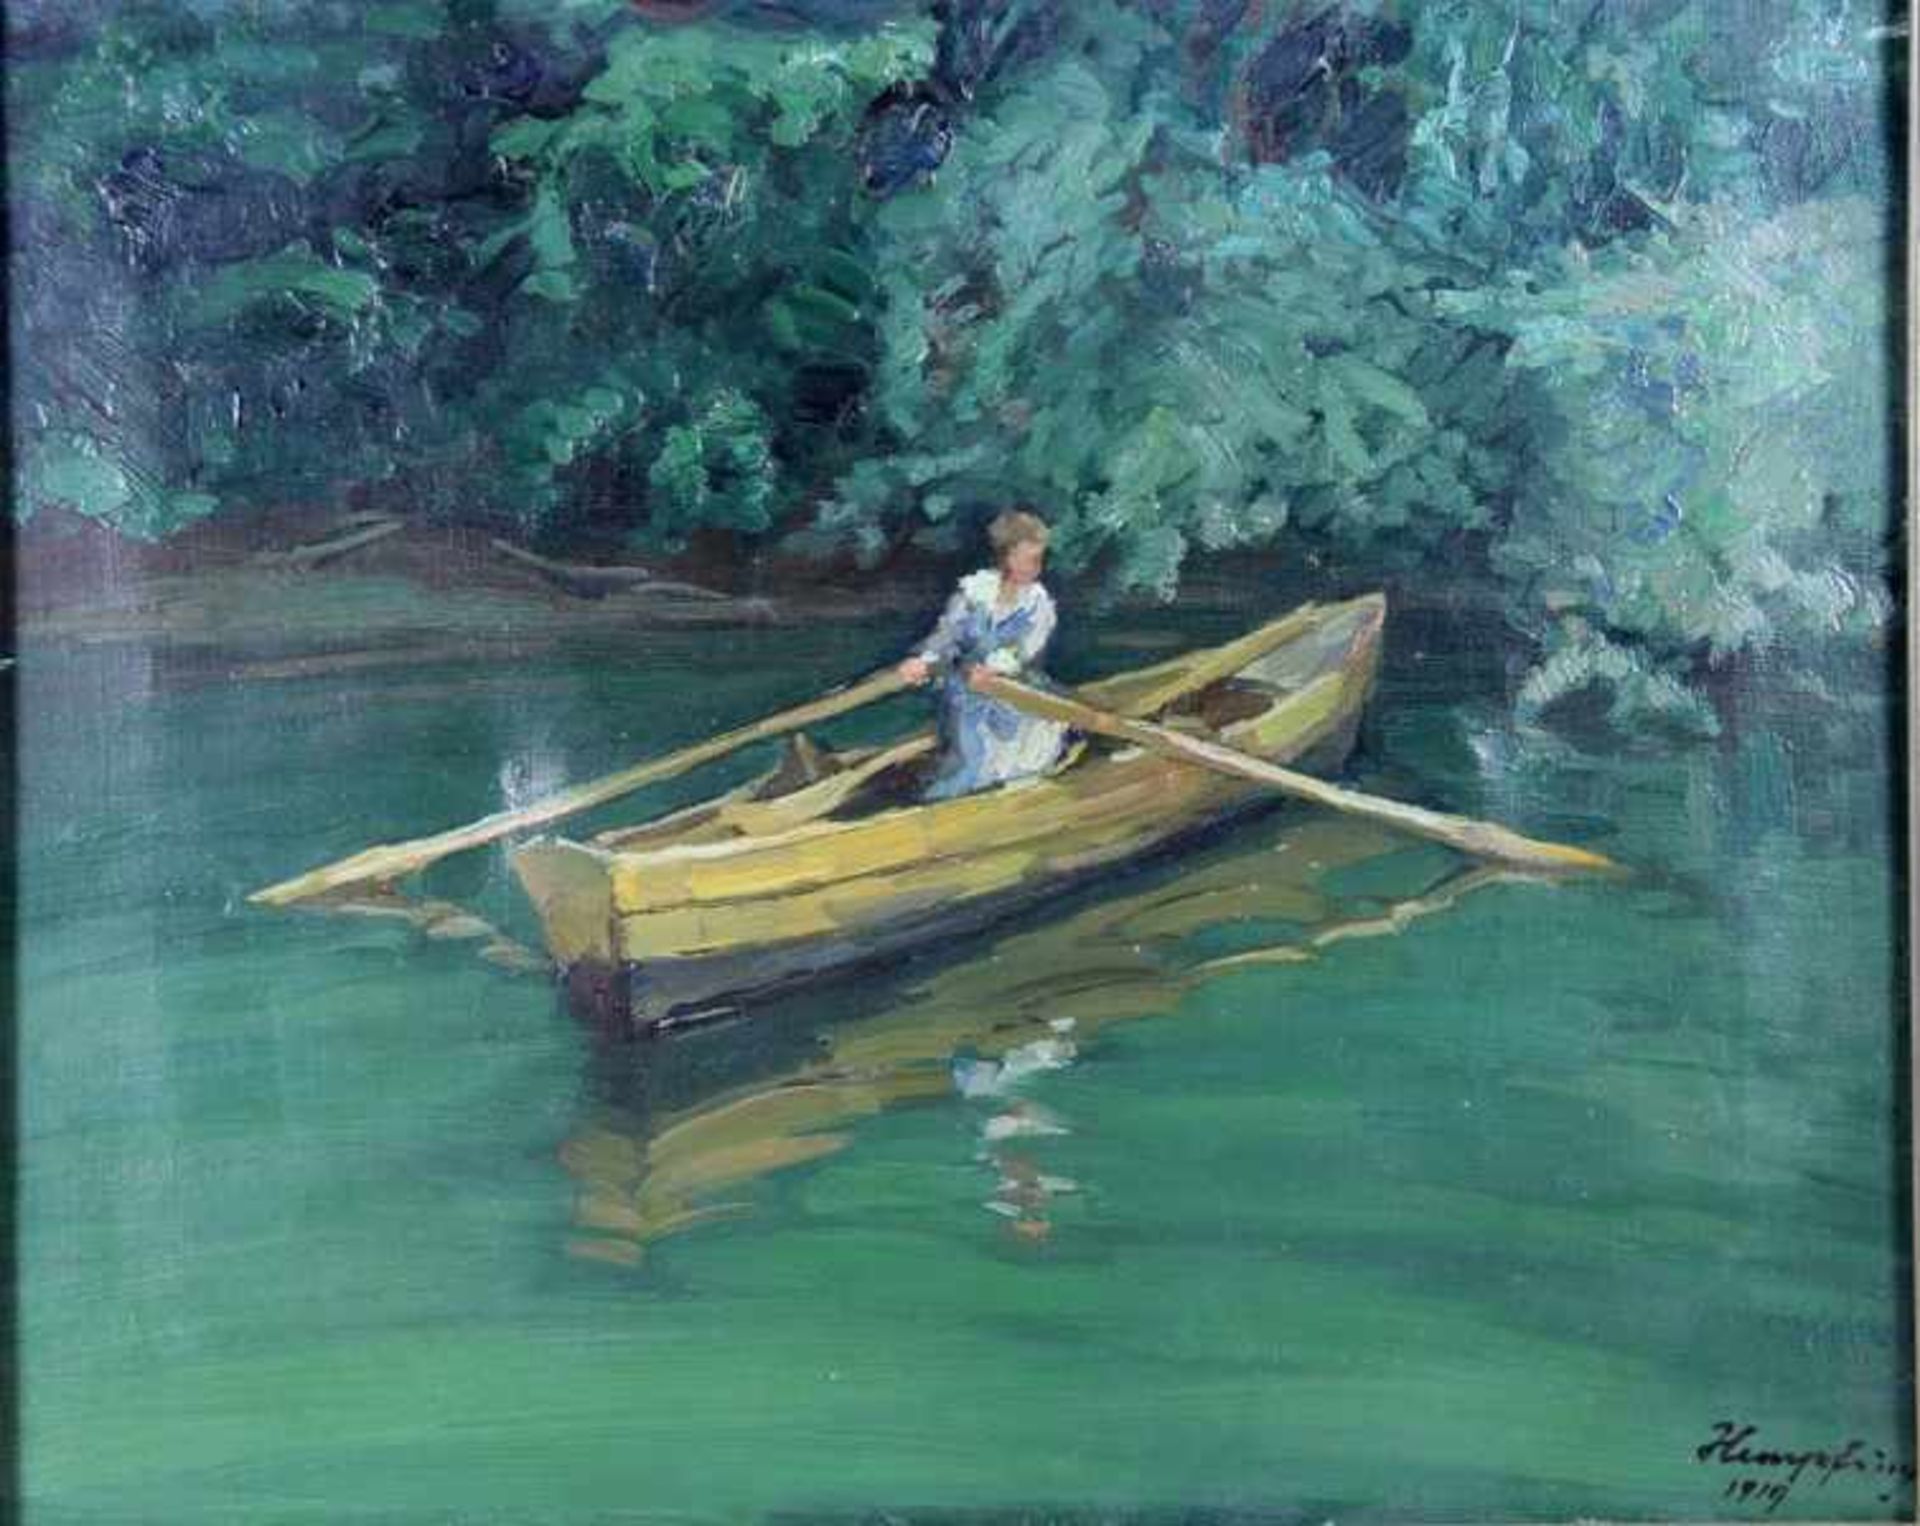 Hempfing, Wilhelm1886-1948, Frau in einem Ruderboot, auf einem Gewässer, hinter ihr dicht